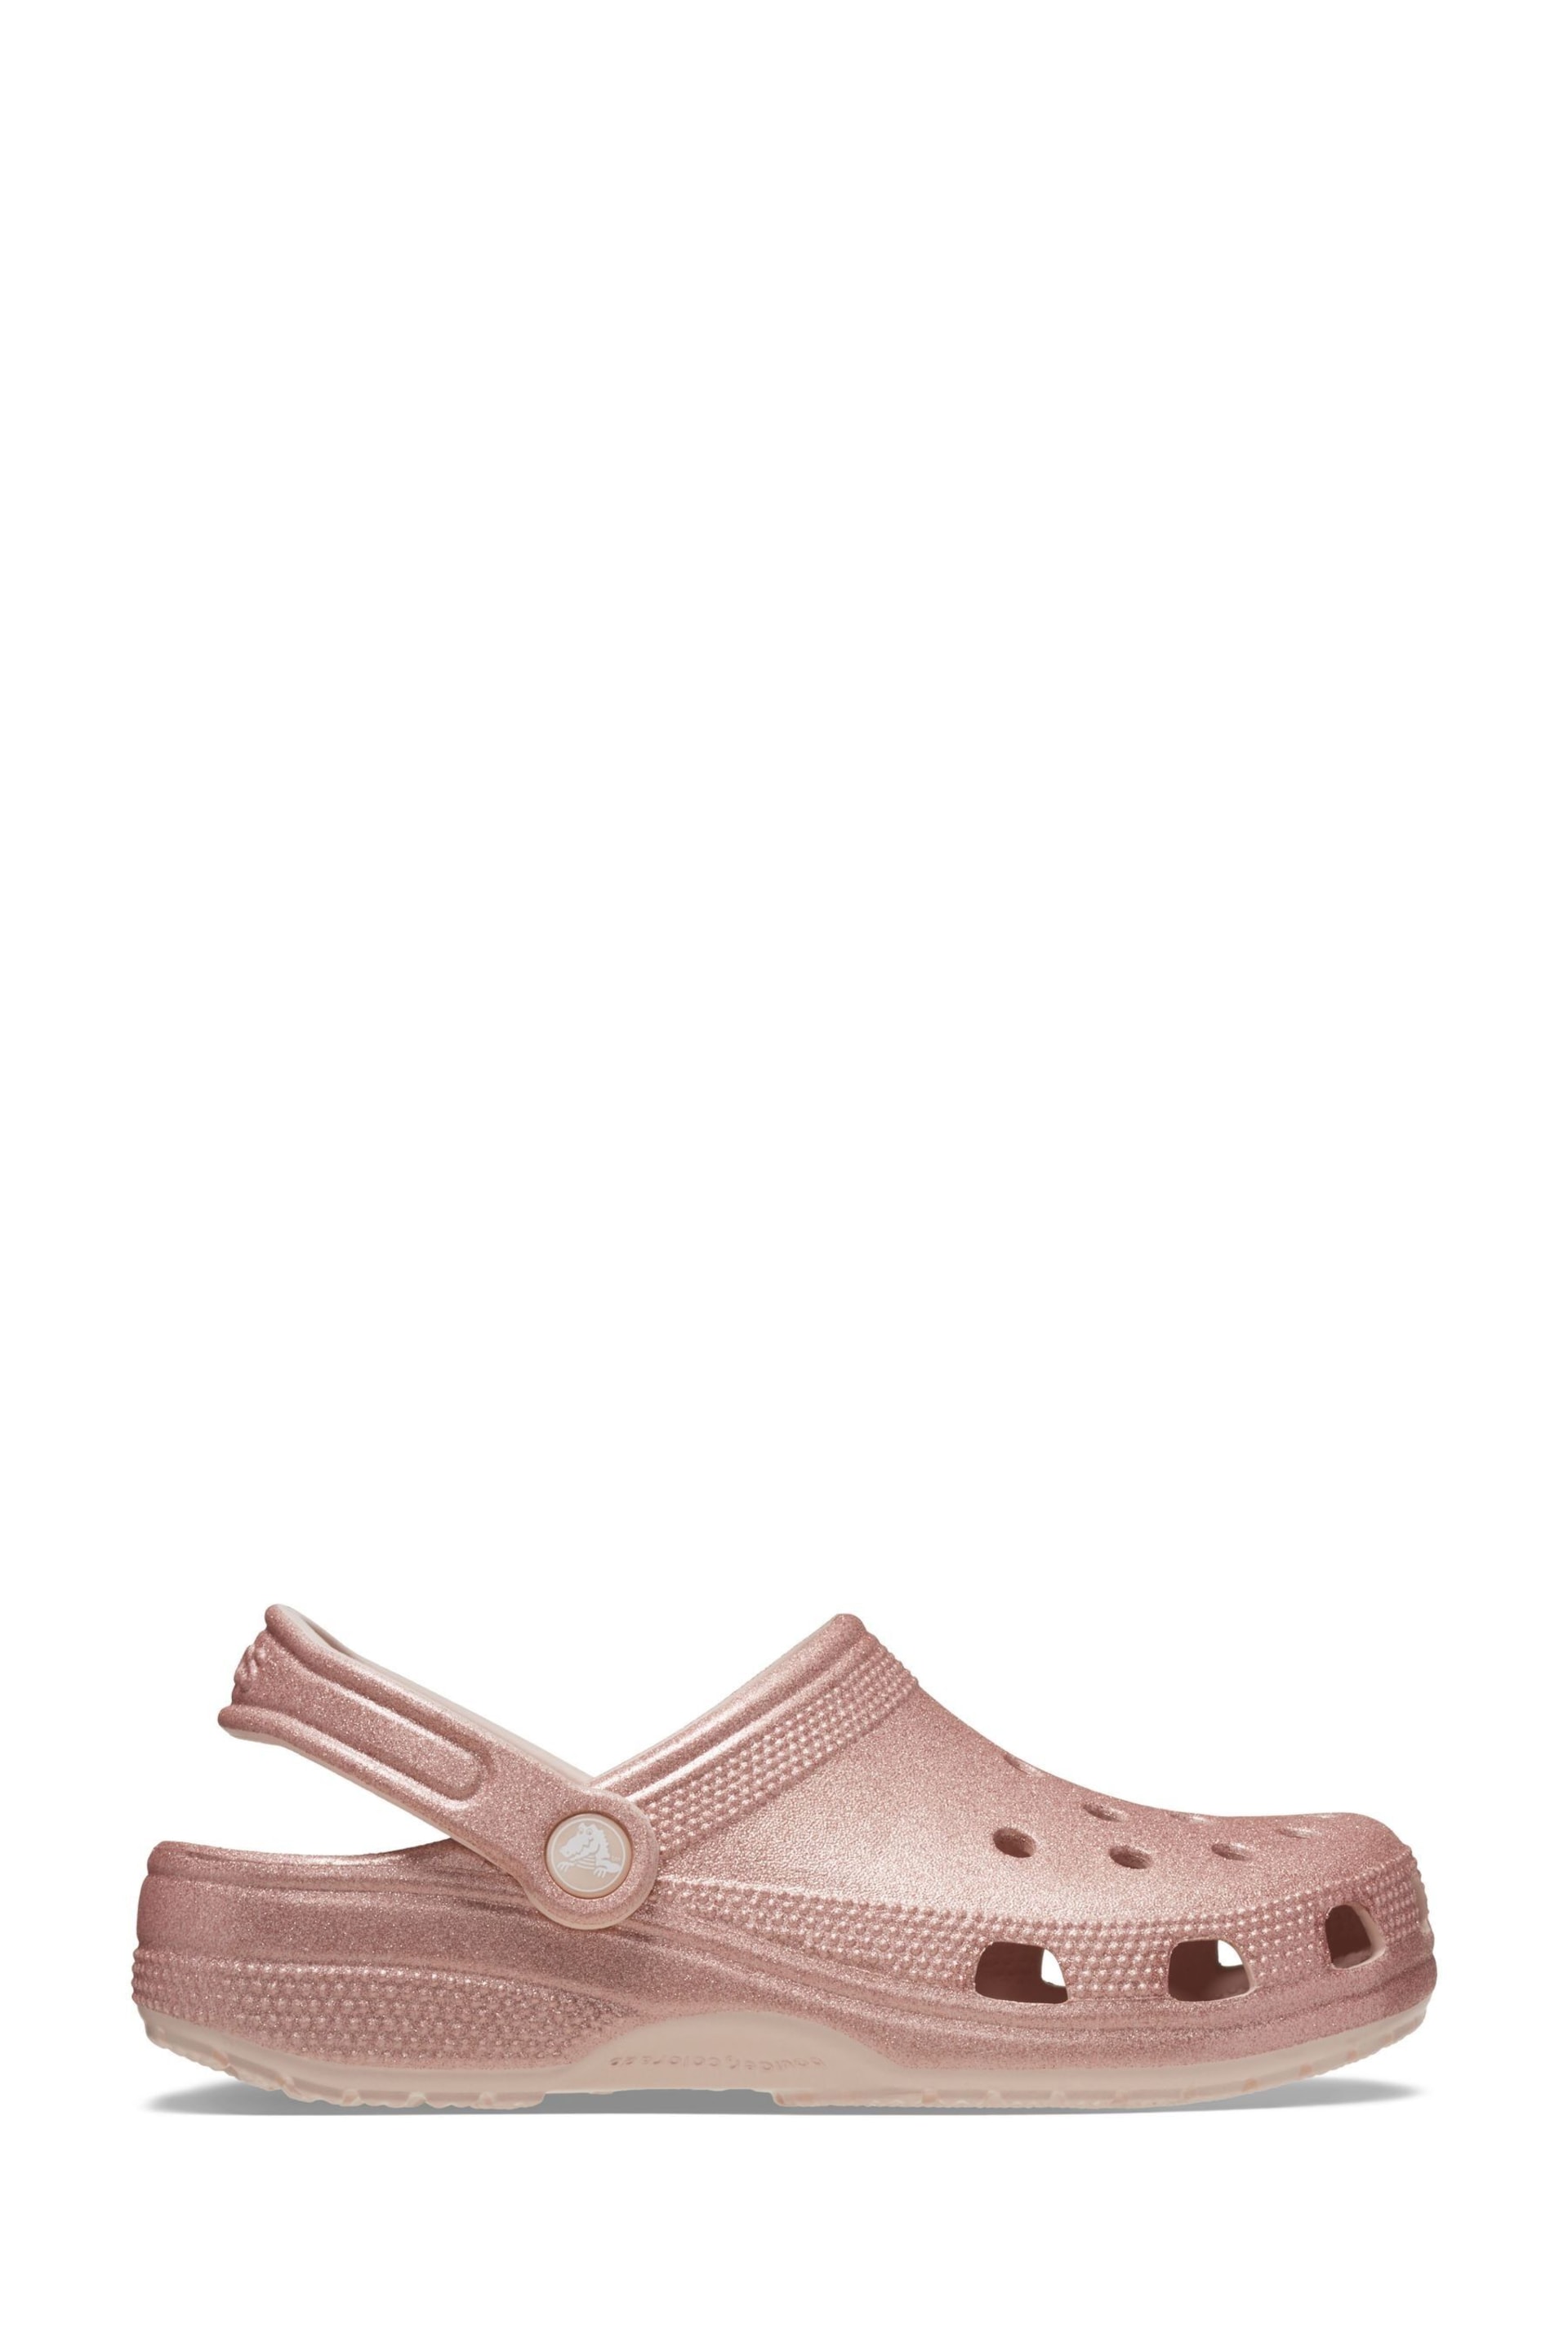 Crocs Classic Glitter Clog - Image 1 of 8